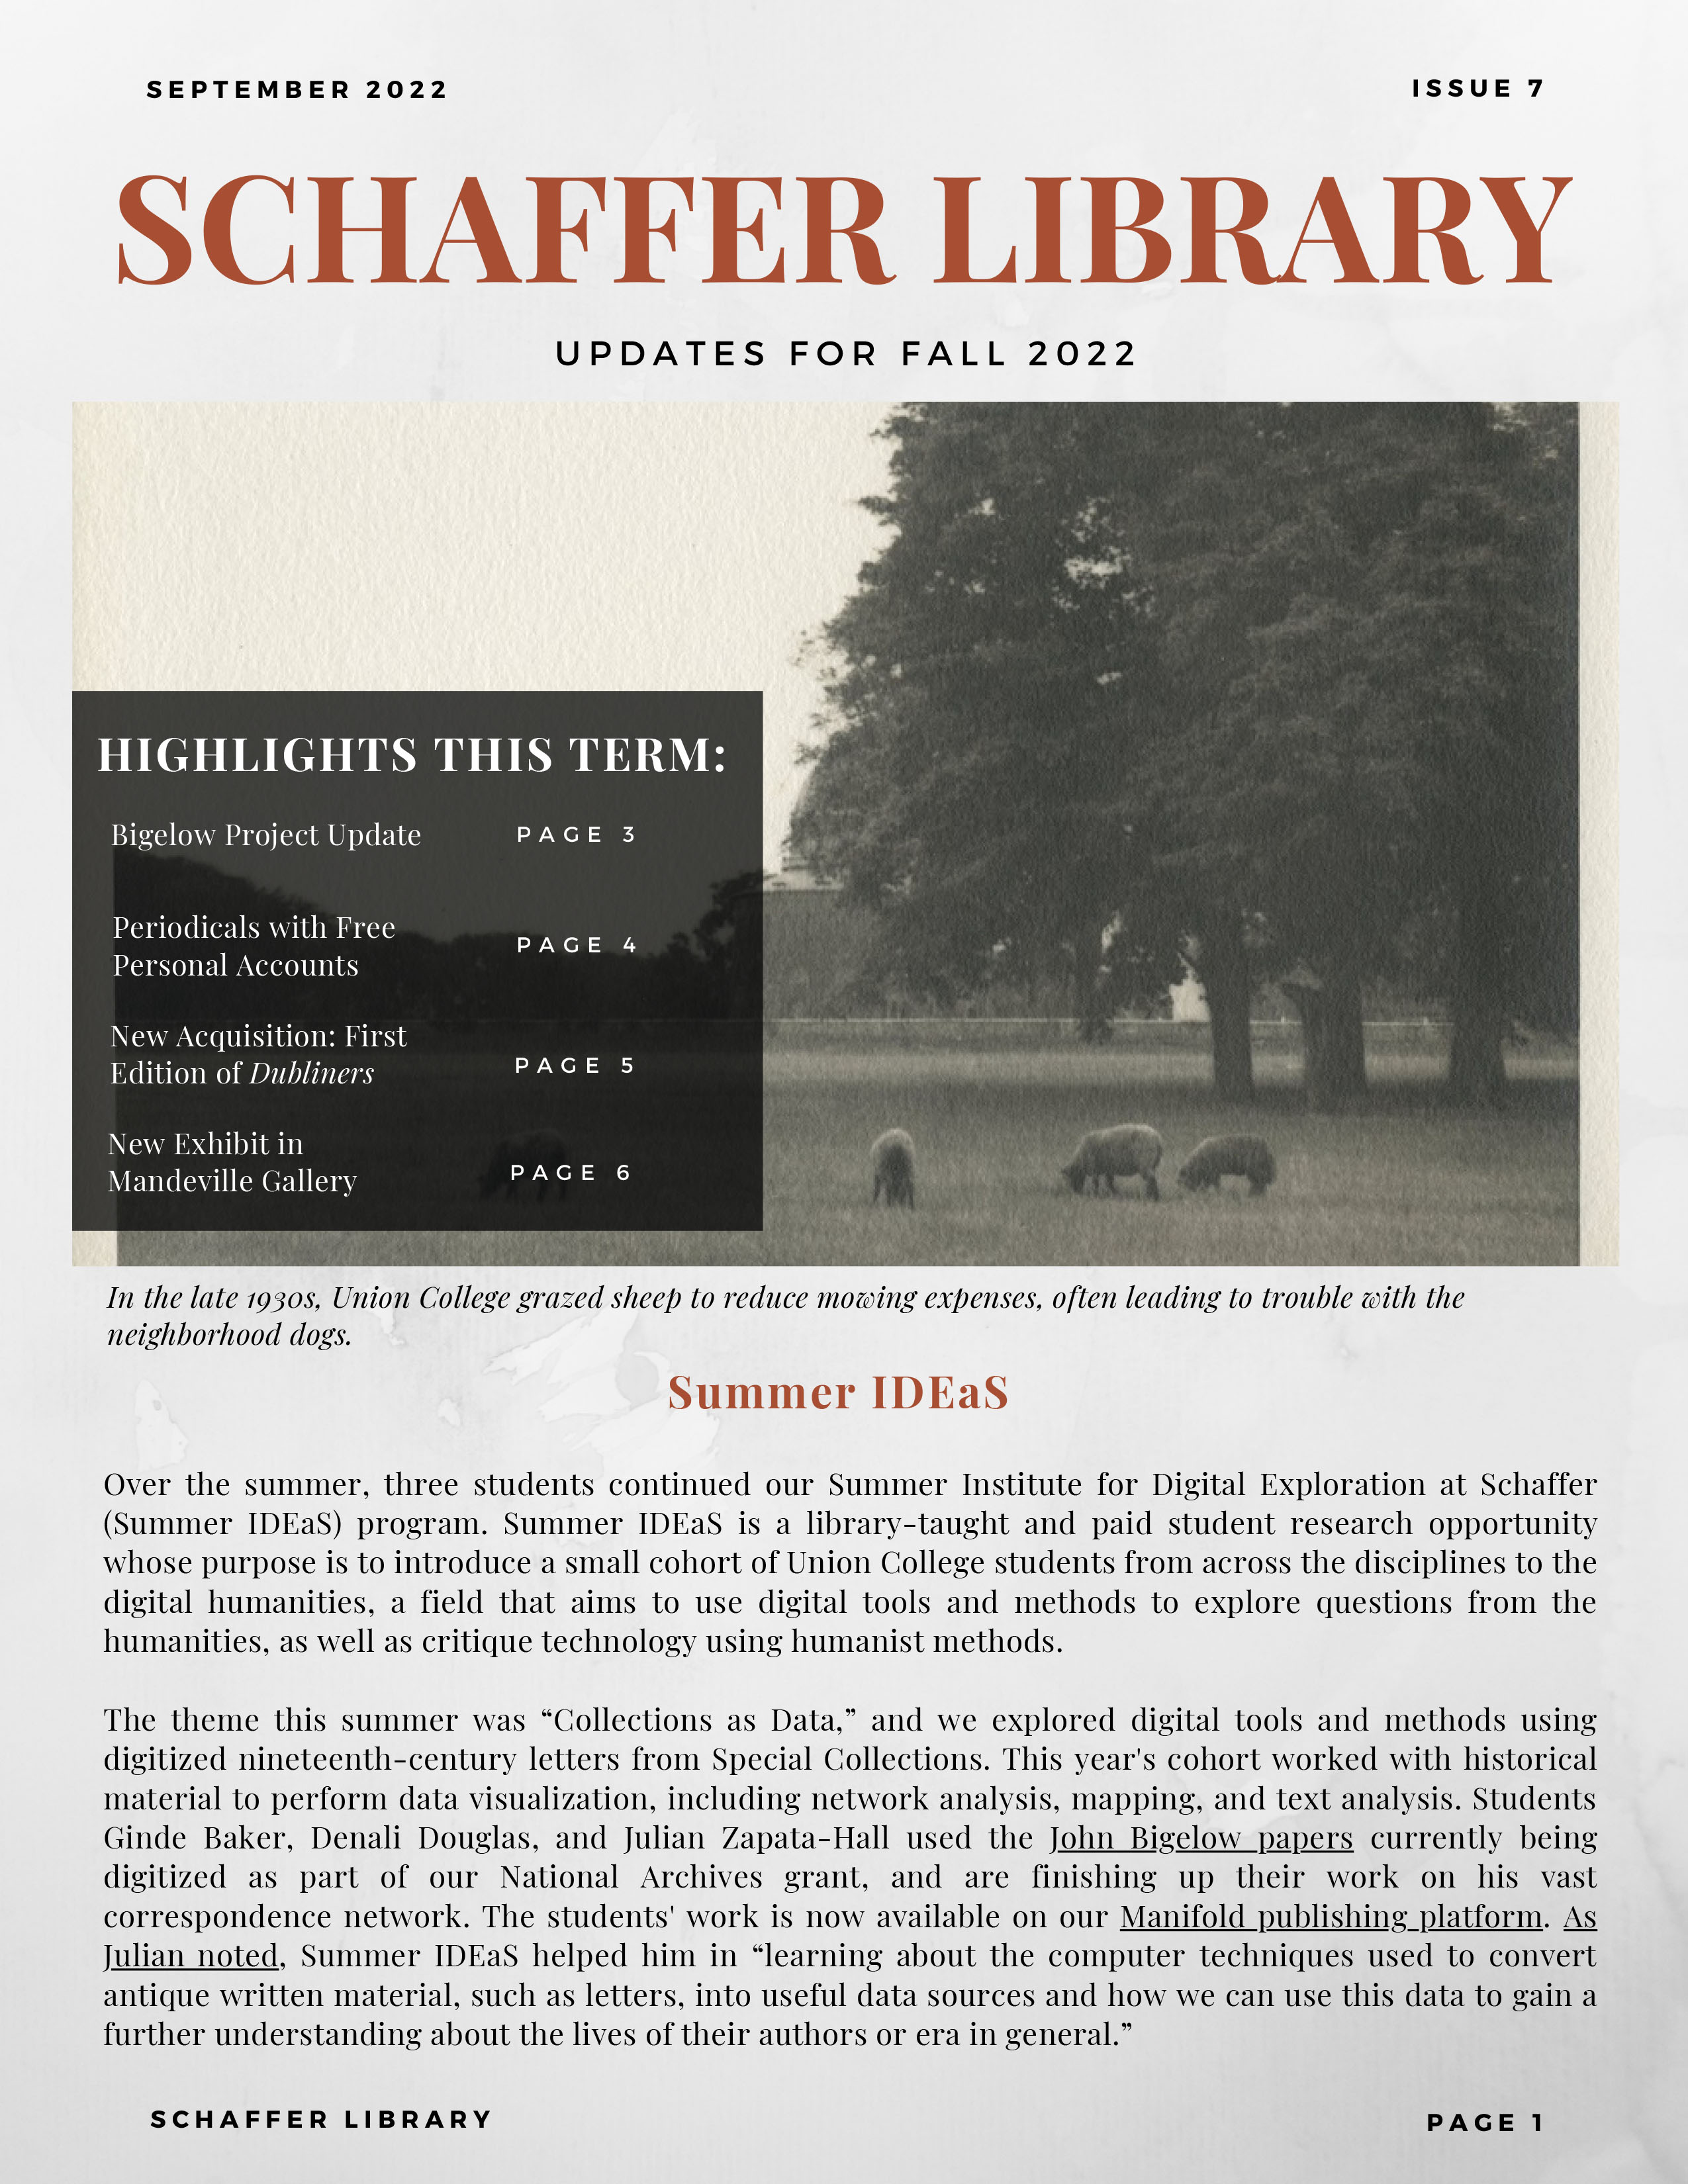 Schaffer Library Newsletter Fall 2022